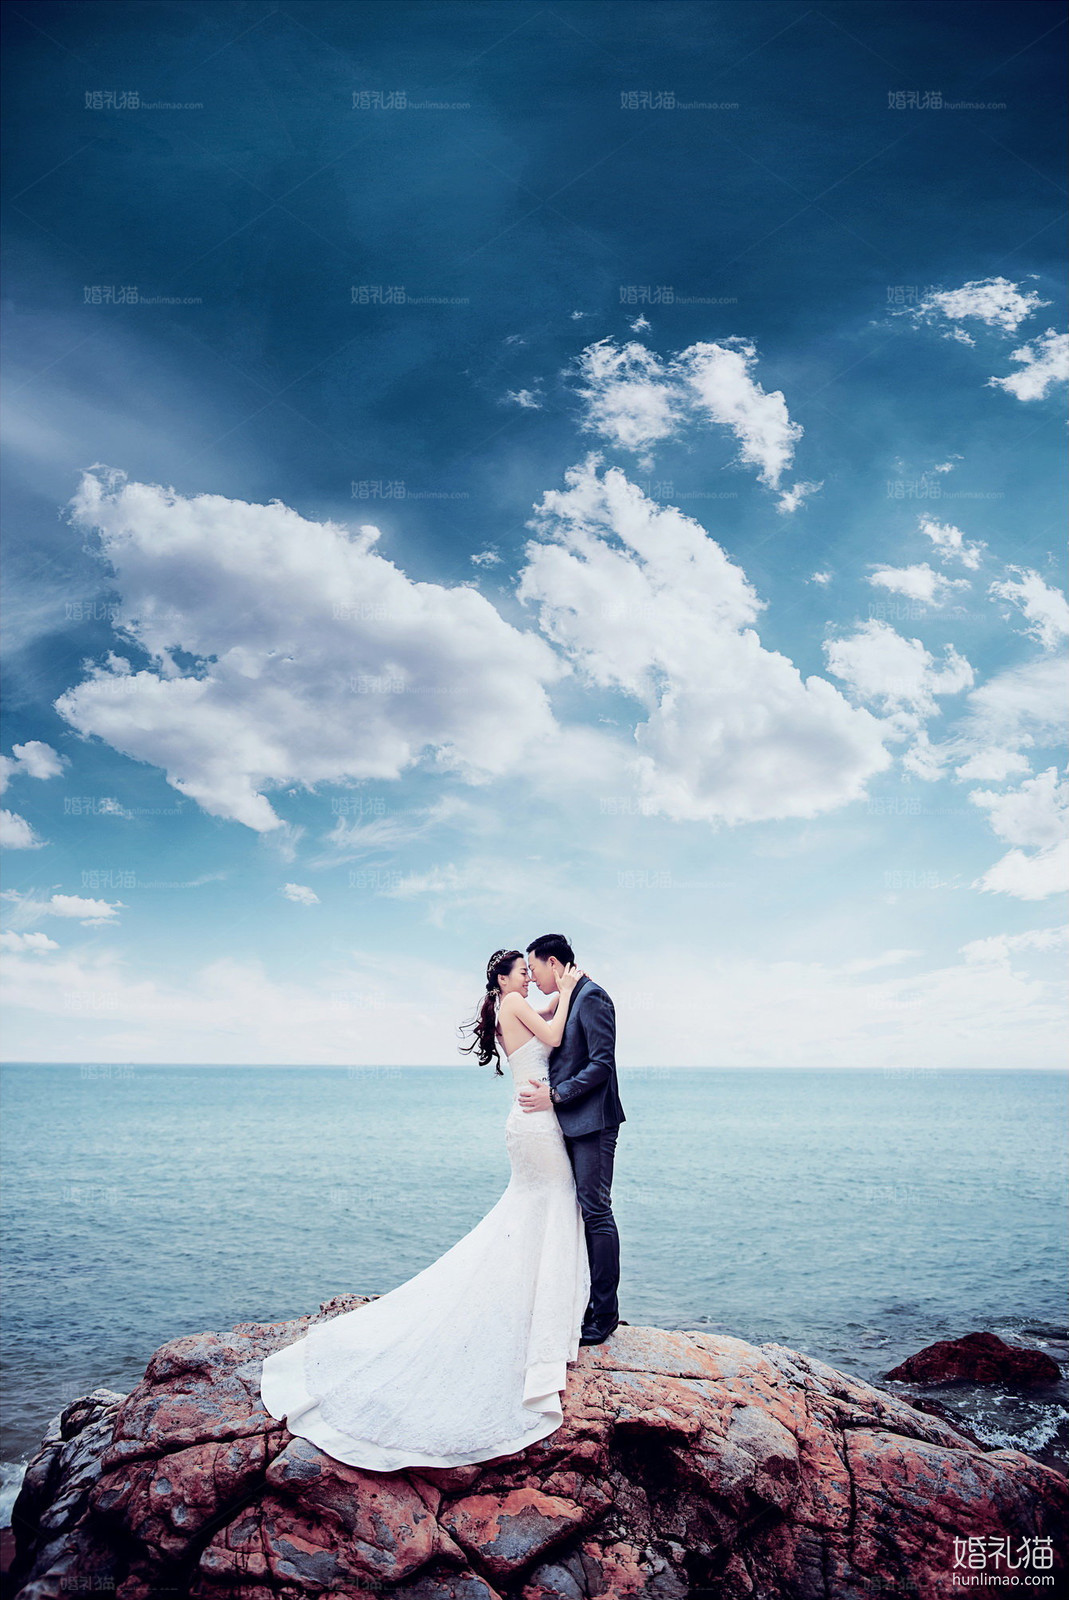 海景结婚照,[海景, 礁石],广州婚纱照,婚纱照图片